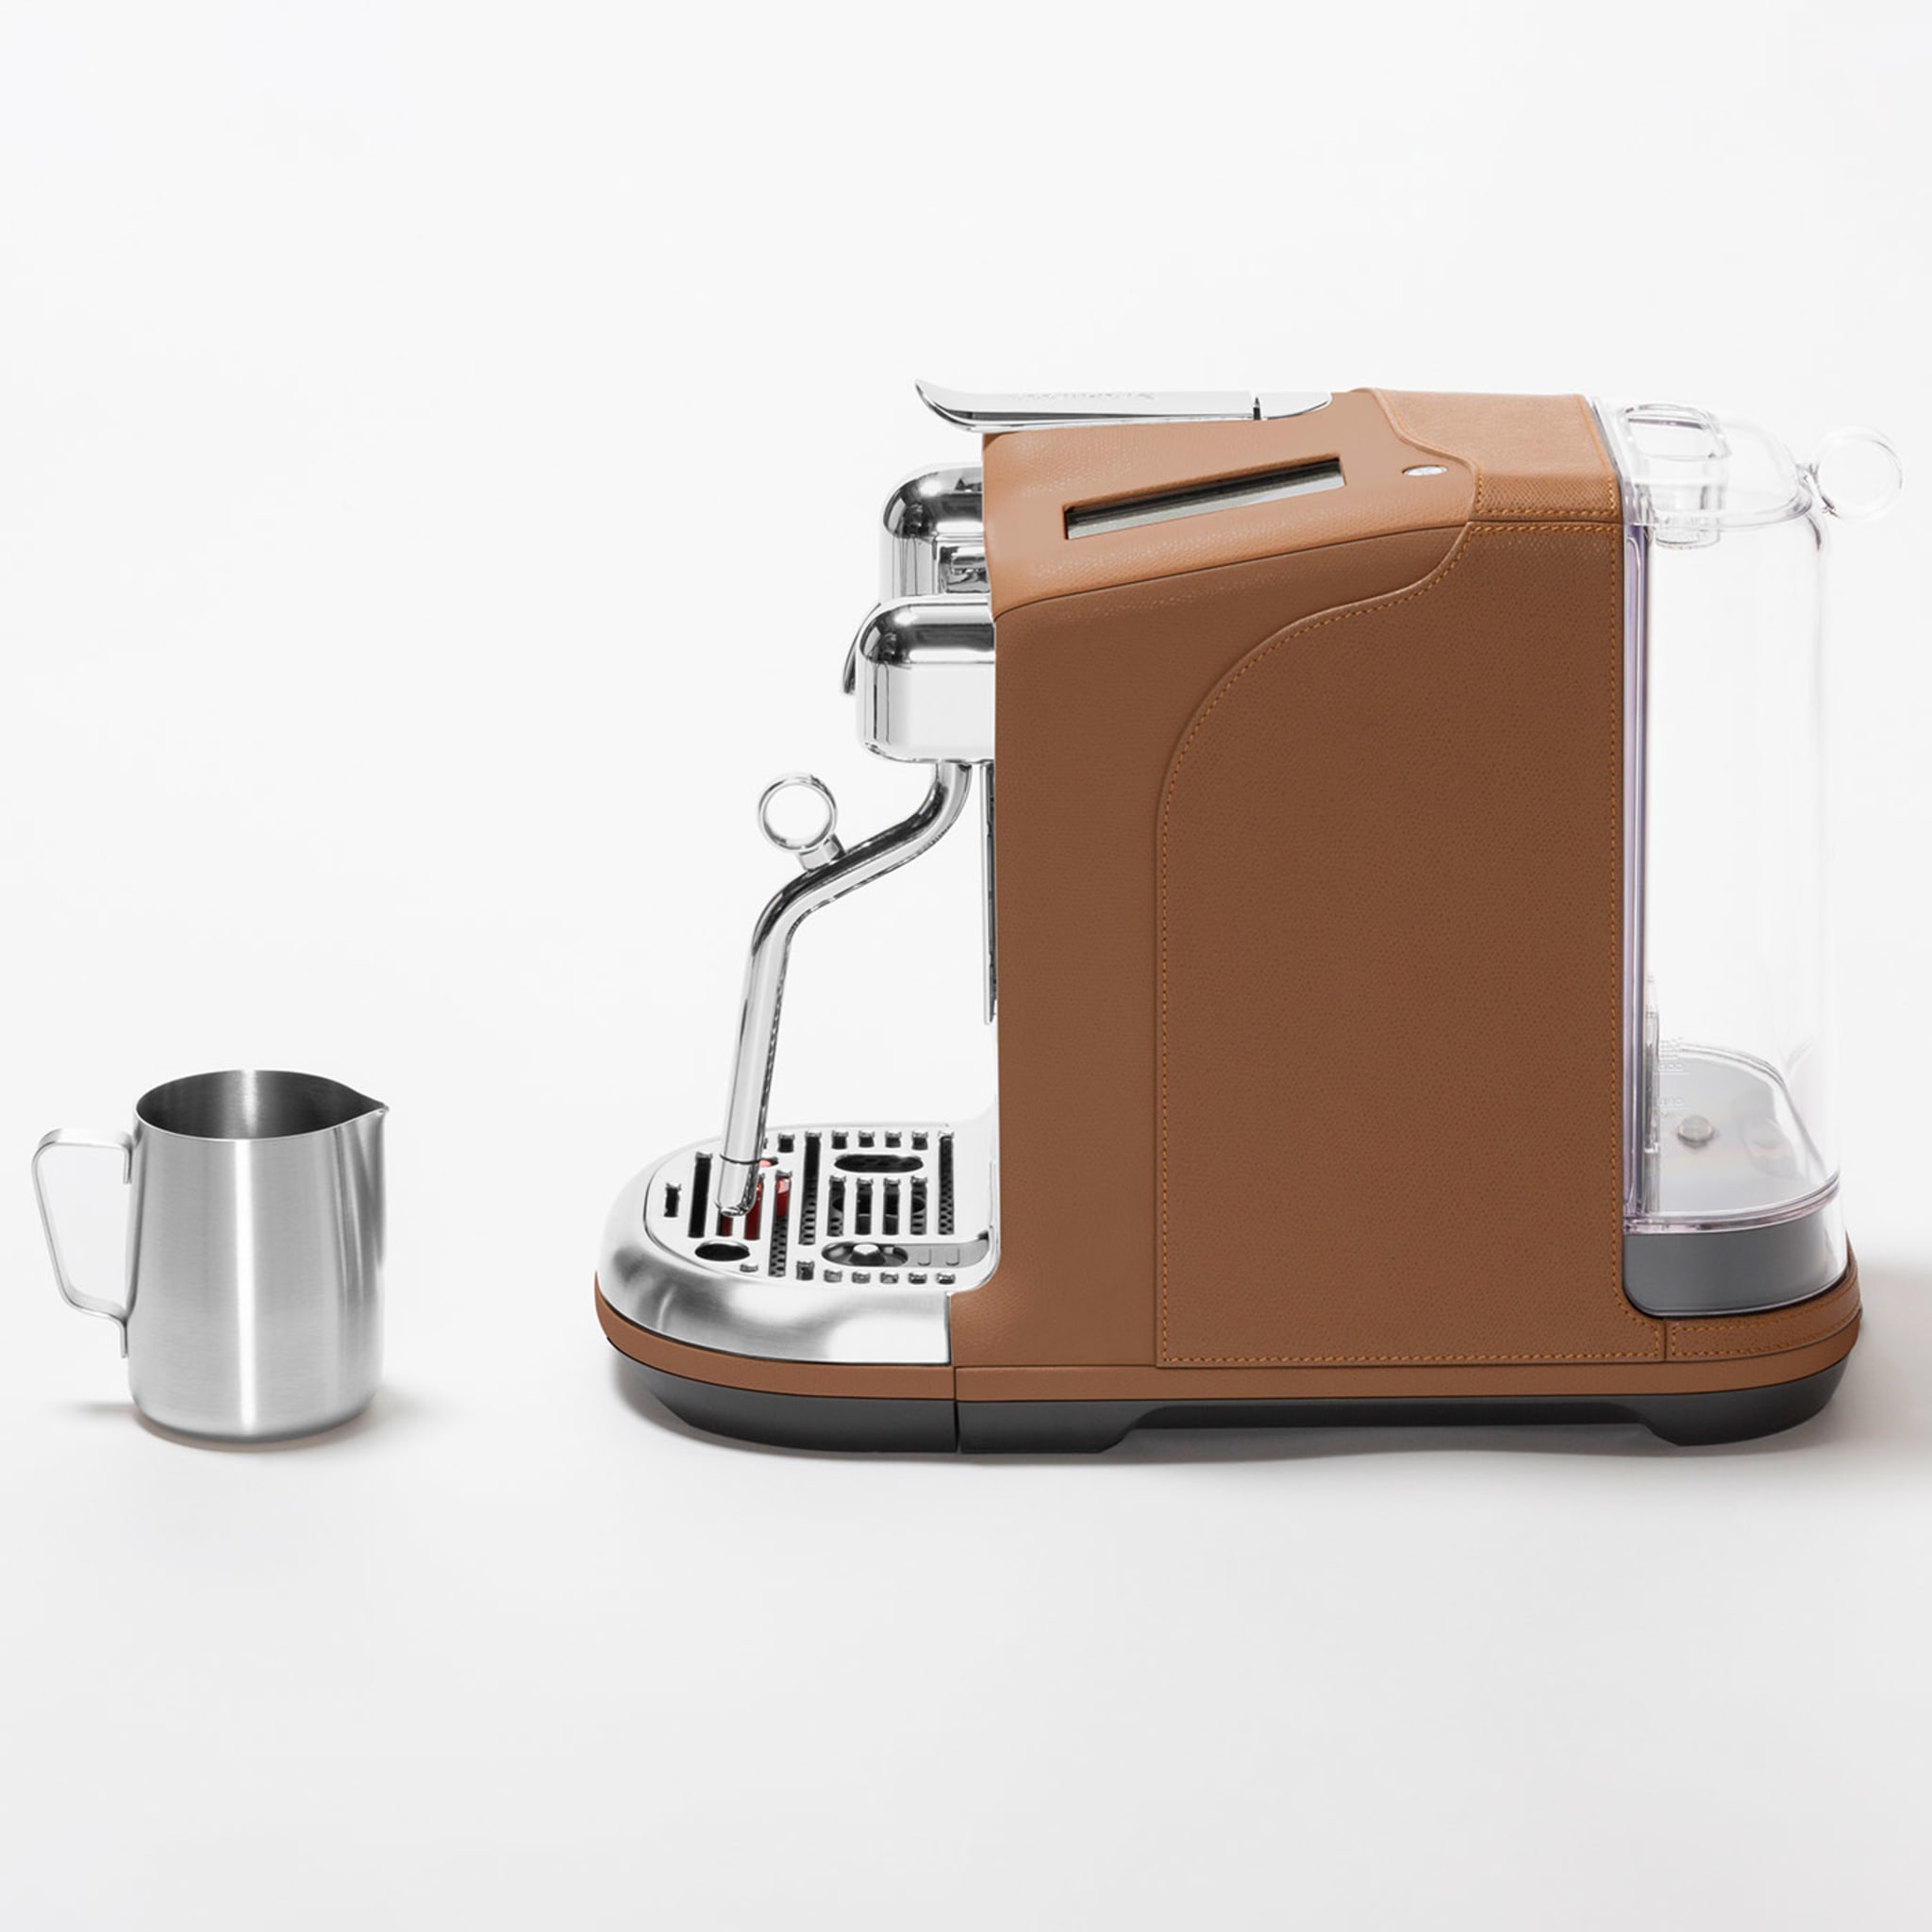 Machine à café Creatista Pro monochrome - Vue alternative 1